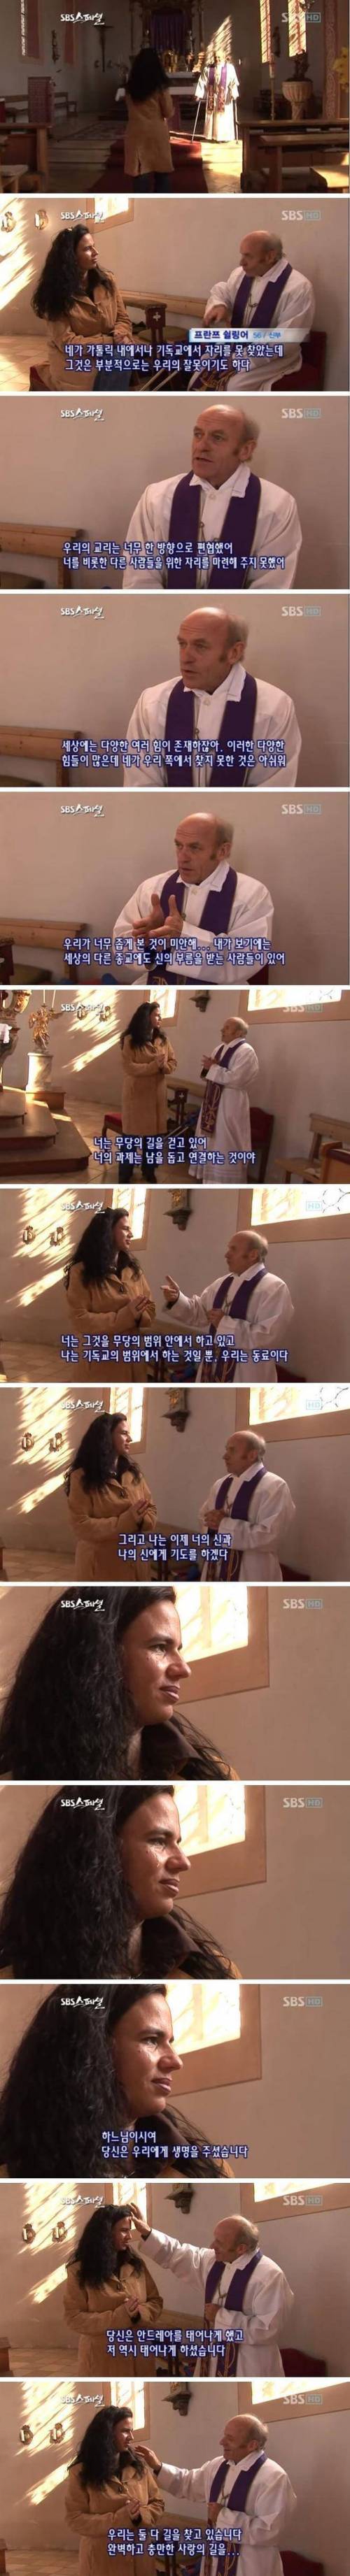 [스압] 한국무당이 된 가톨릭 신자에게 신부님이 건넨 말